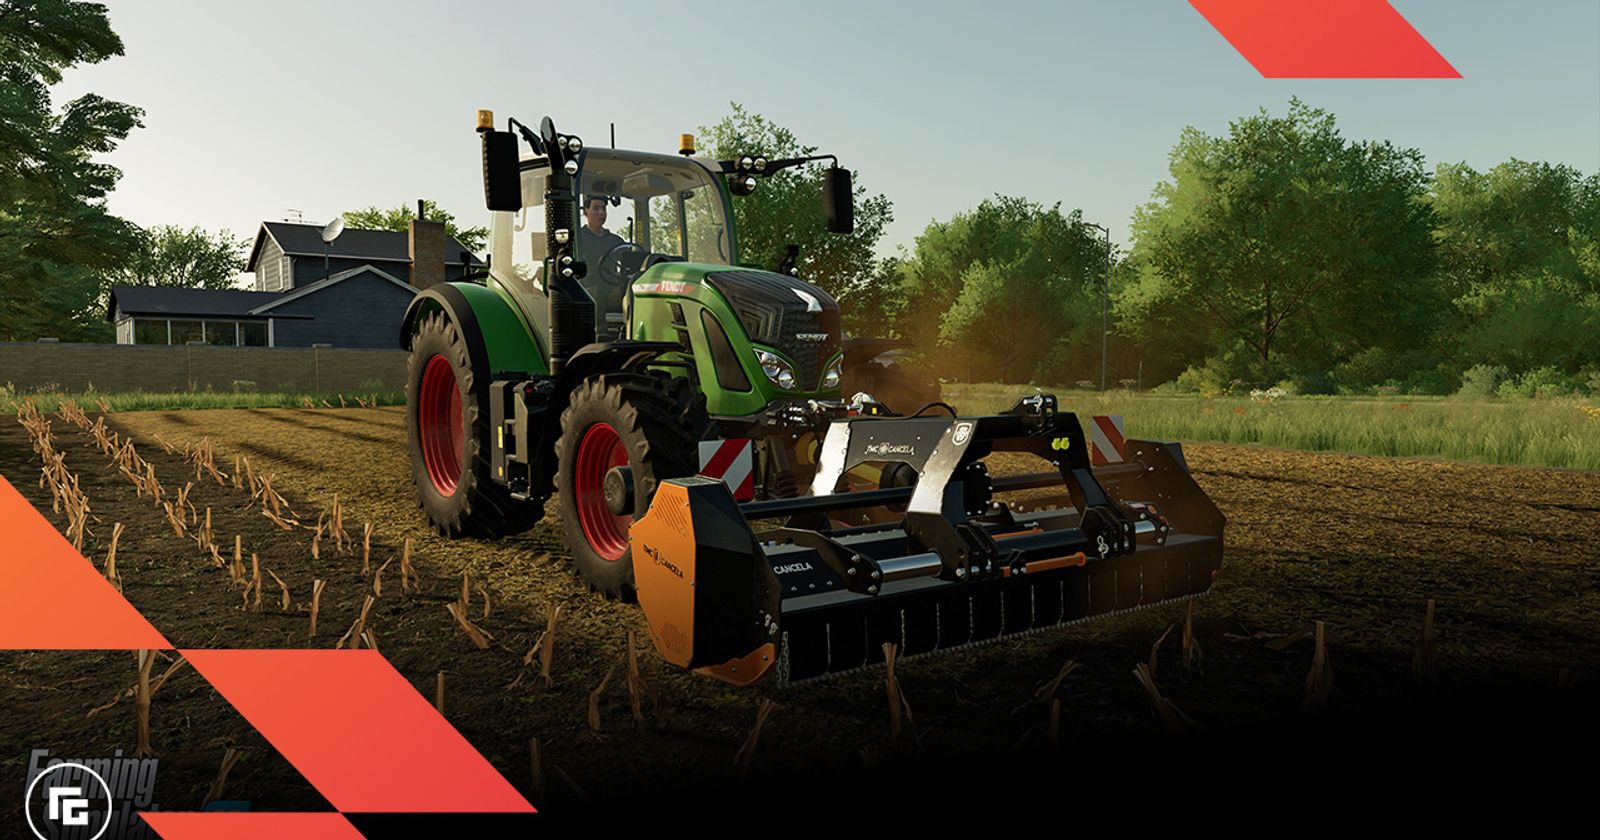 Farming Simulator 22 mods